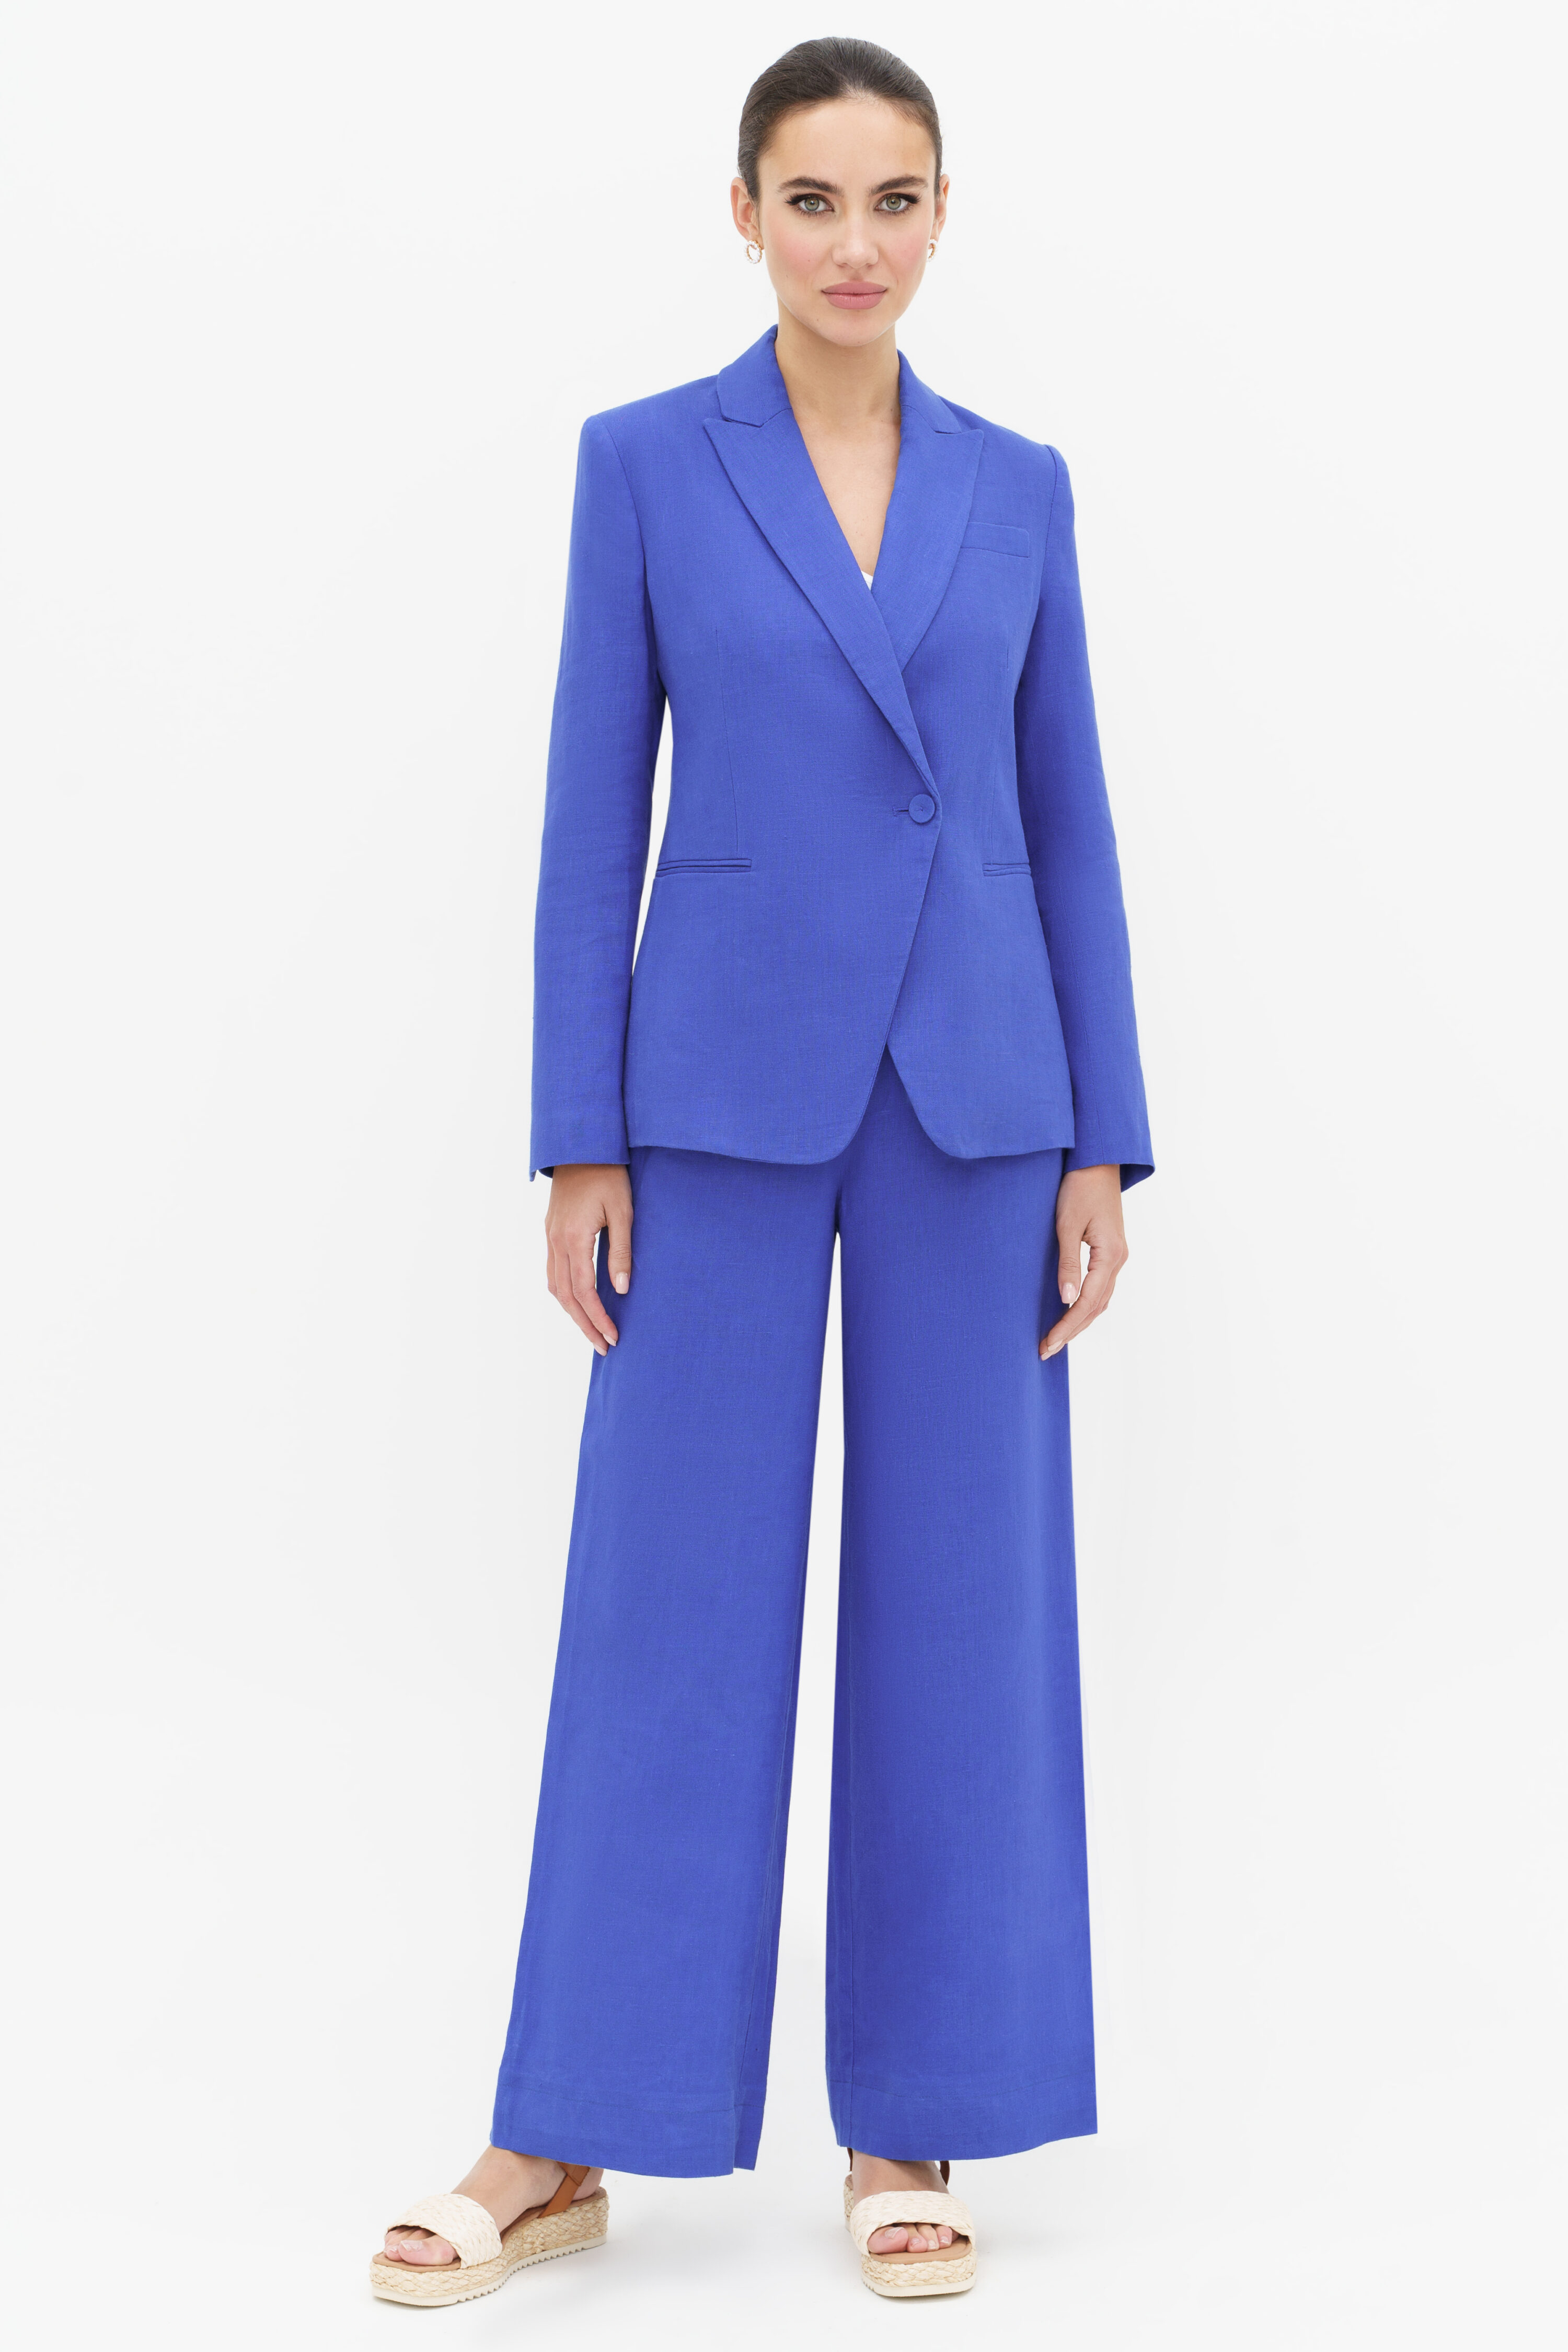 Купить костюм URS 24-340-1 женский льняной синий